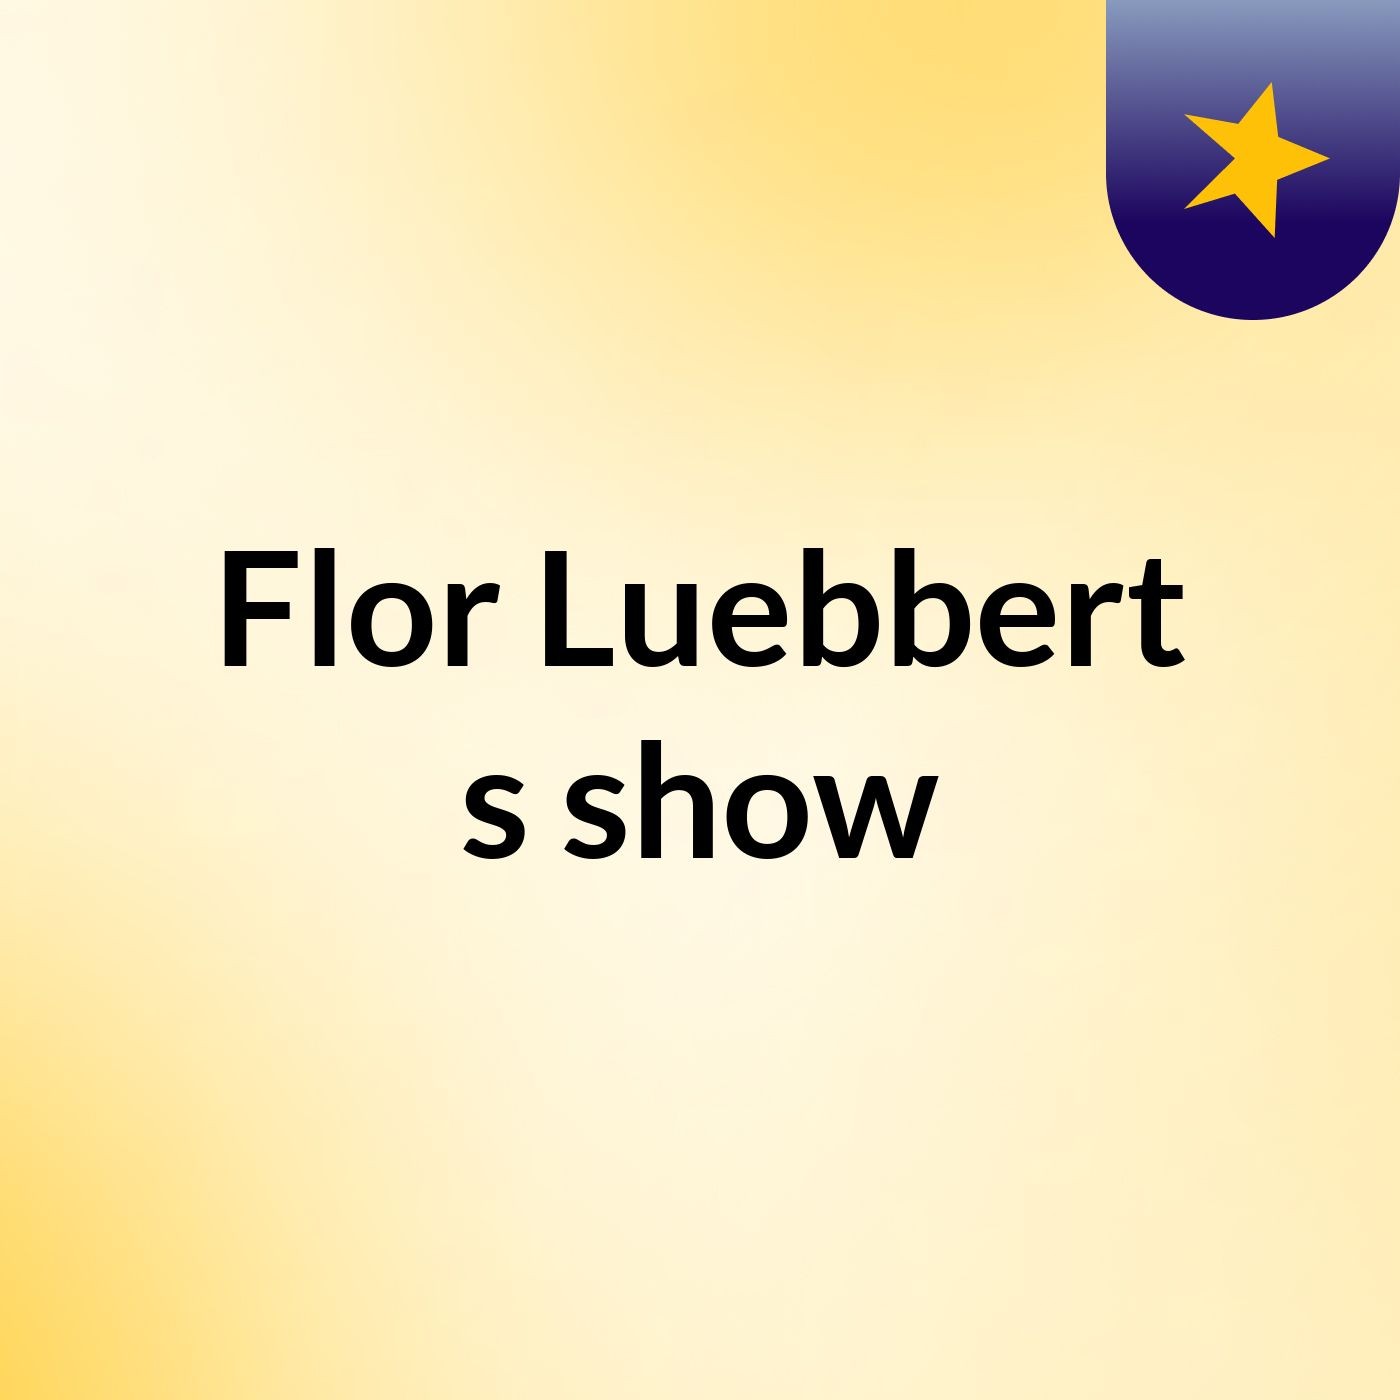 Flor Luebbert's show